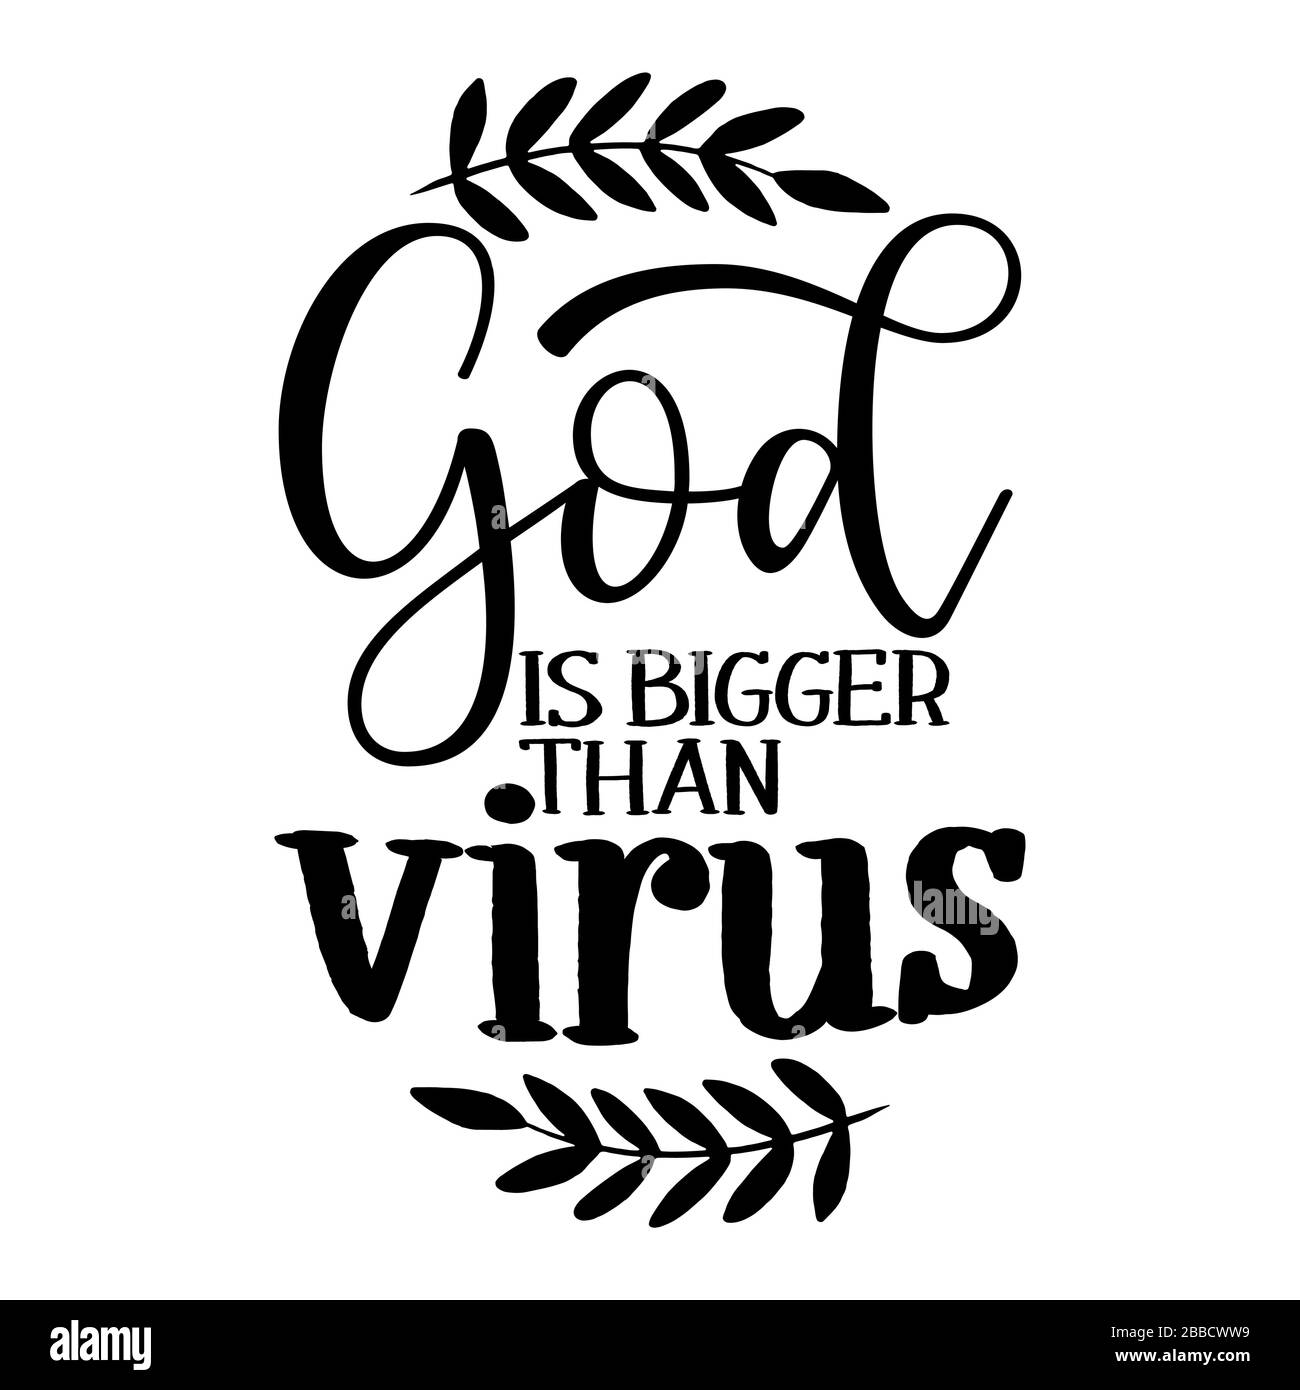 Gott ist größer als Virus - unterstützen Sie Menschen in ihrer schweren Zeit. Coronavirus, religiöse Handbuch-Schrift Motivationszeichen Fang Wort Kunst Design. Jahrgang Stock Vektor